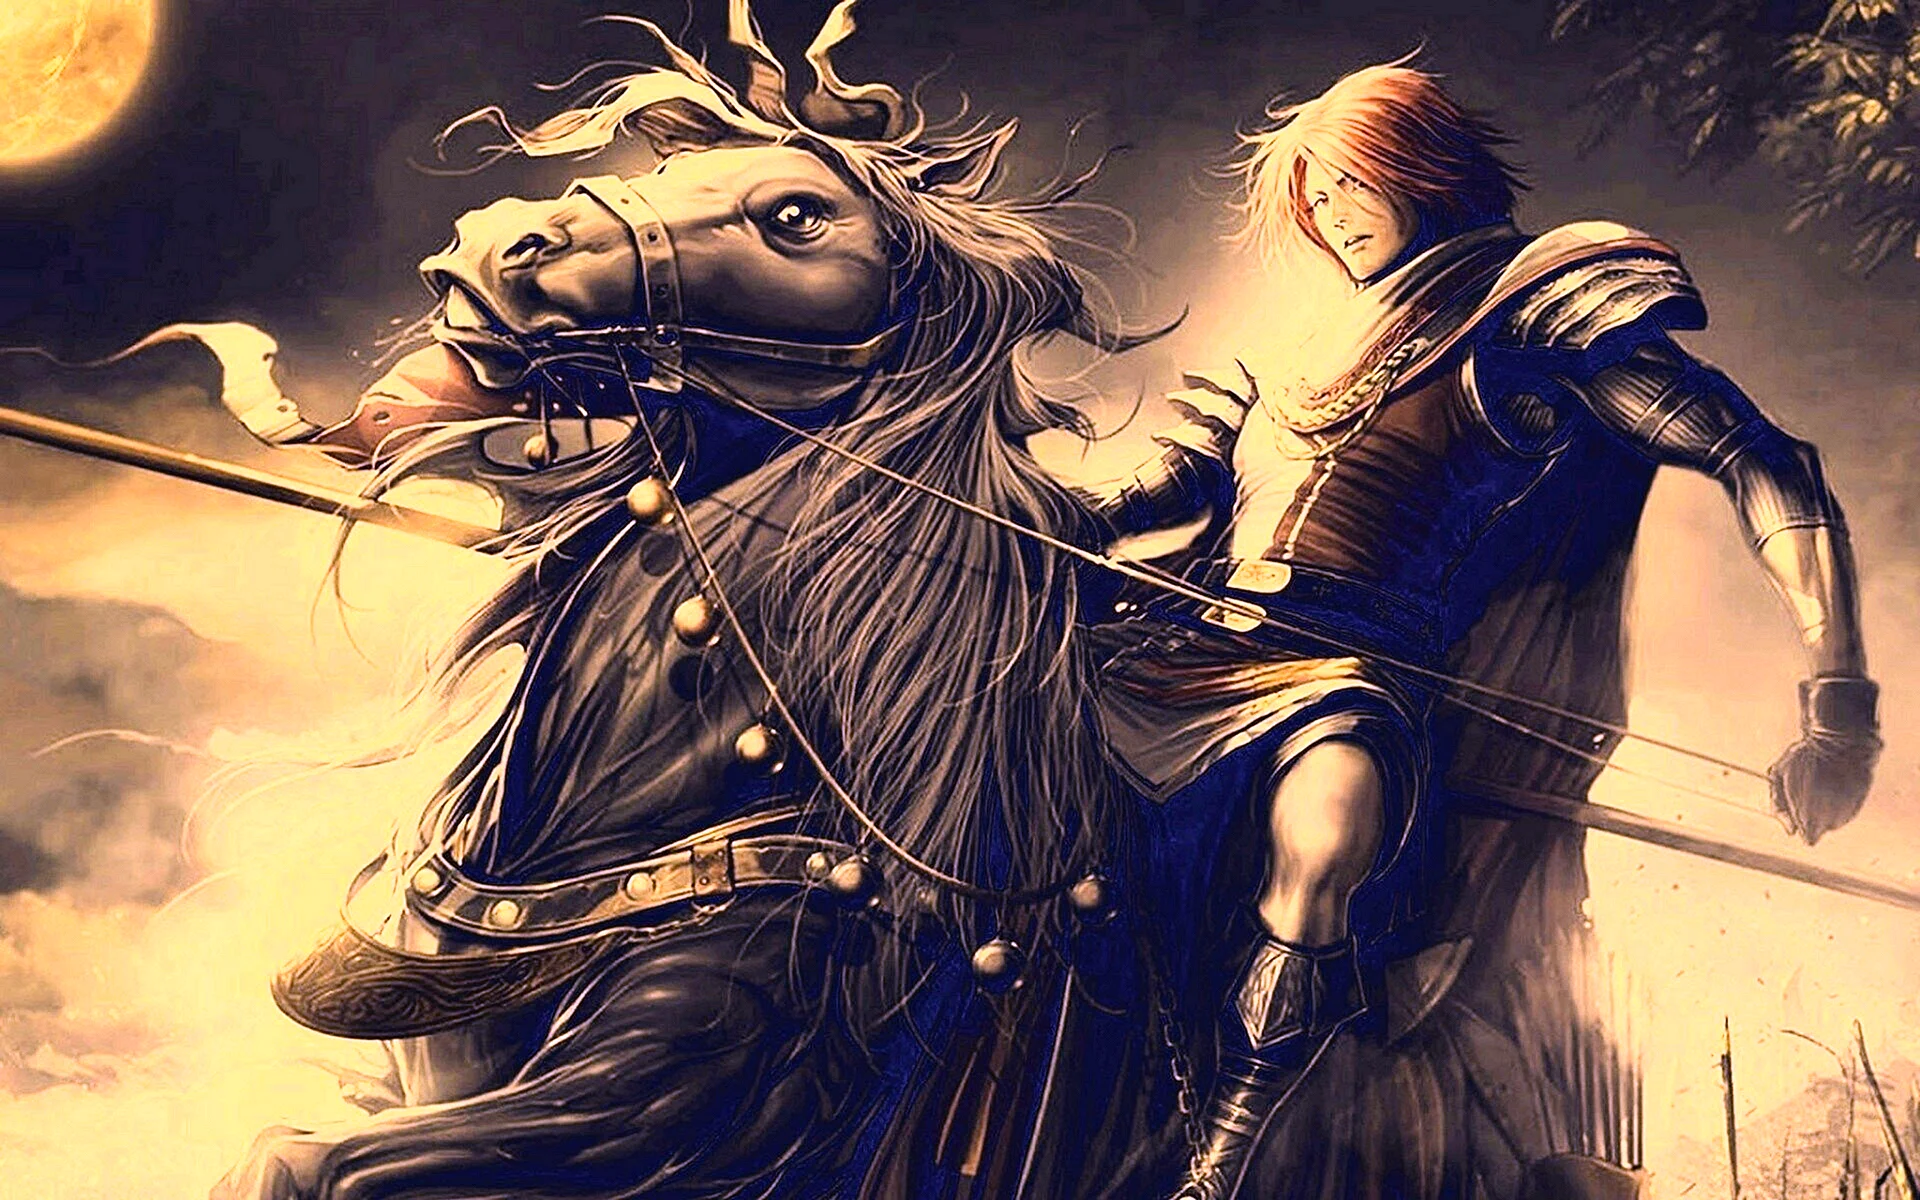 Читать фанфики рыцари. Рыцарь. Рыцарь с копьем. Рыцарь на коне с копьем. Рыцарь смерти на коне с копьём.